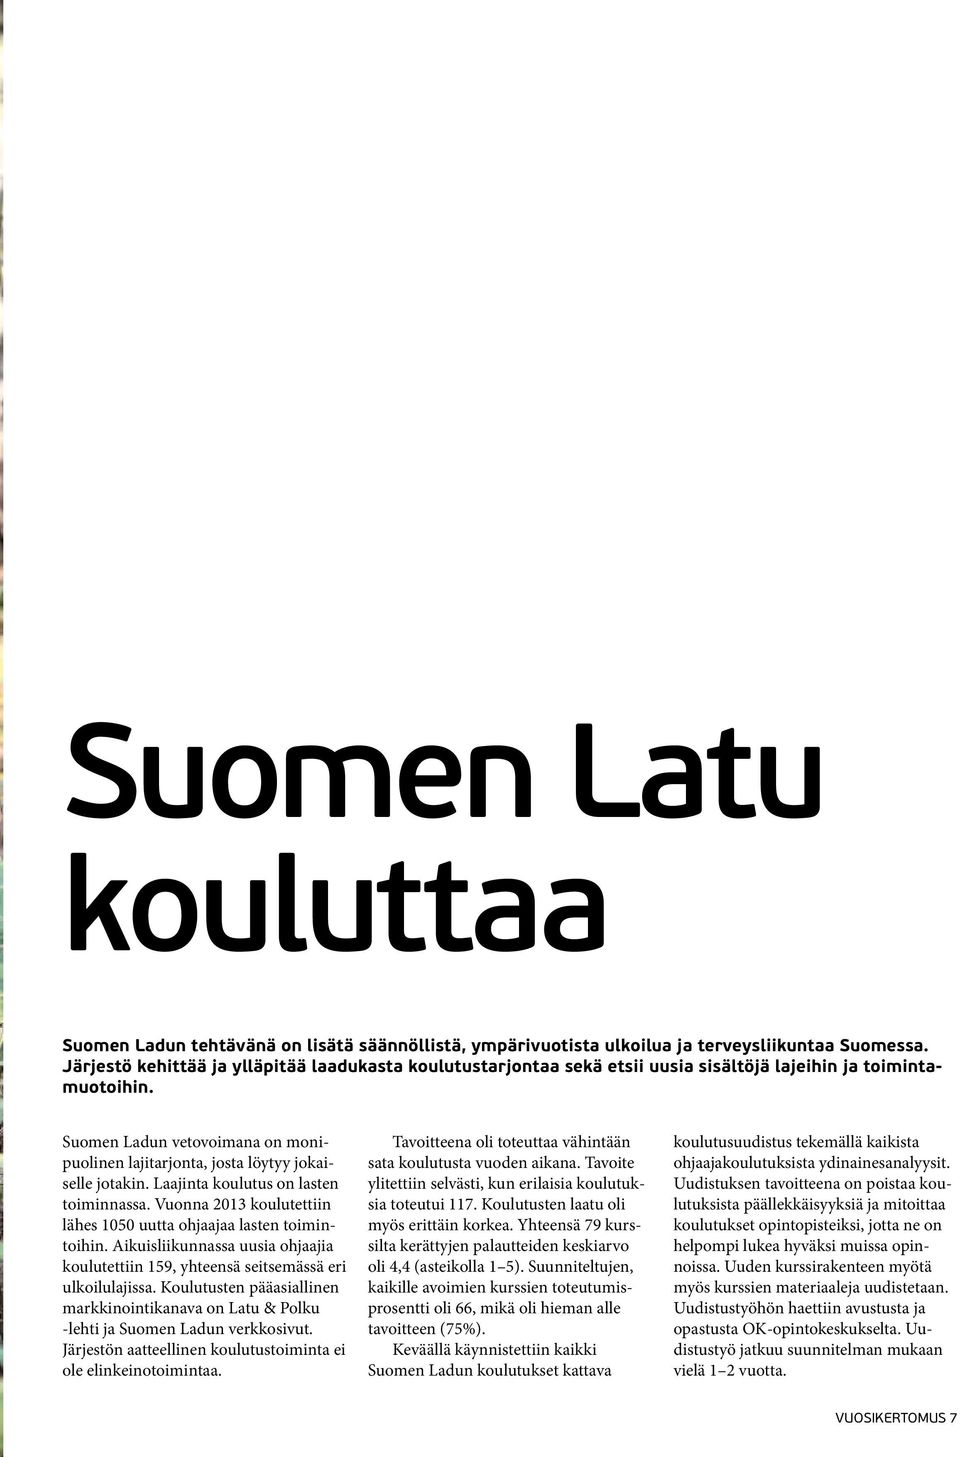 Suomen Ladun vetovoimana on monipuolinen lajitarjonta, josta löytyy jokaiselle jotakin. Laajinta koulutus on lasten toiminnassa. Vuonna 2013 koulutettiin lähes 1050 uutta ohjaajaa lasten toimintoihin.